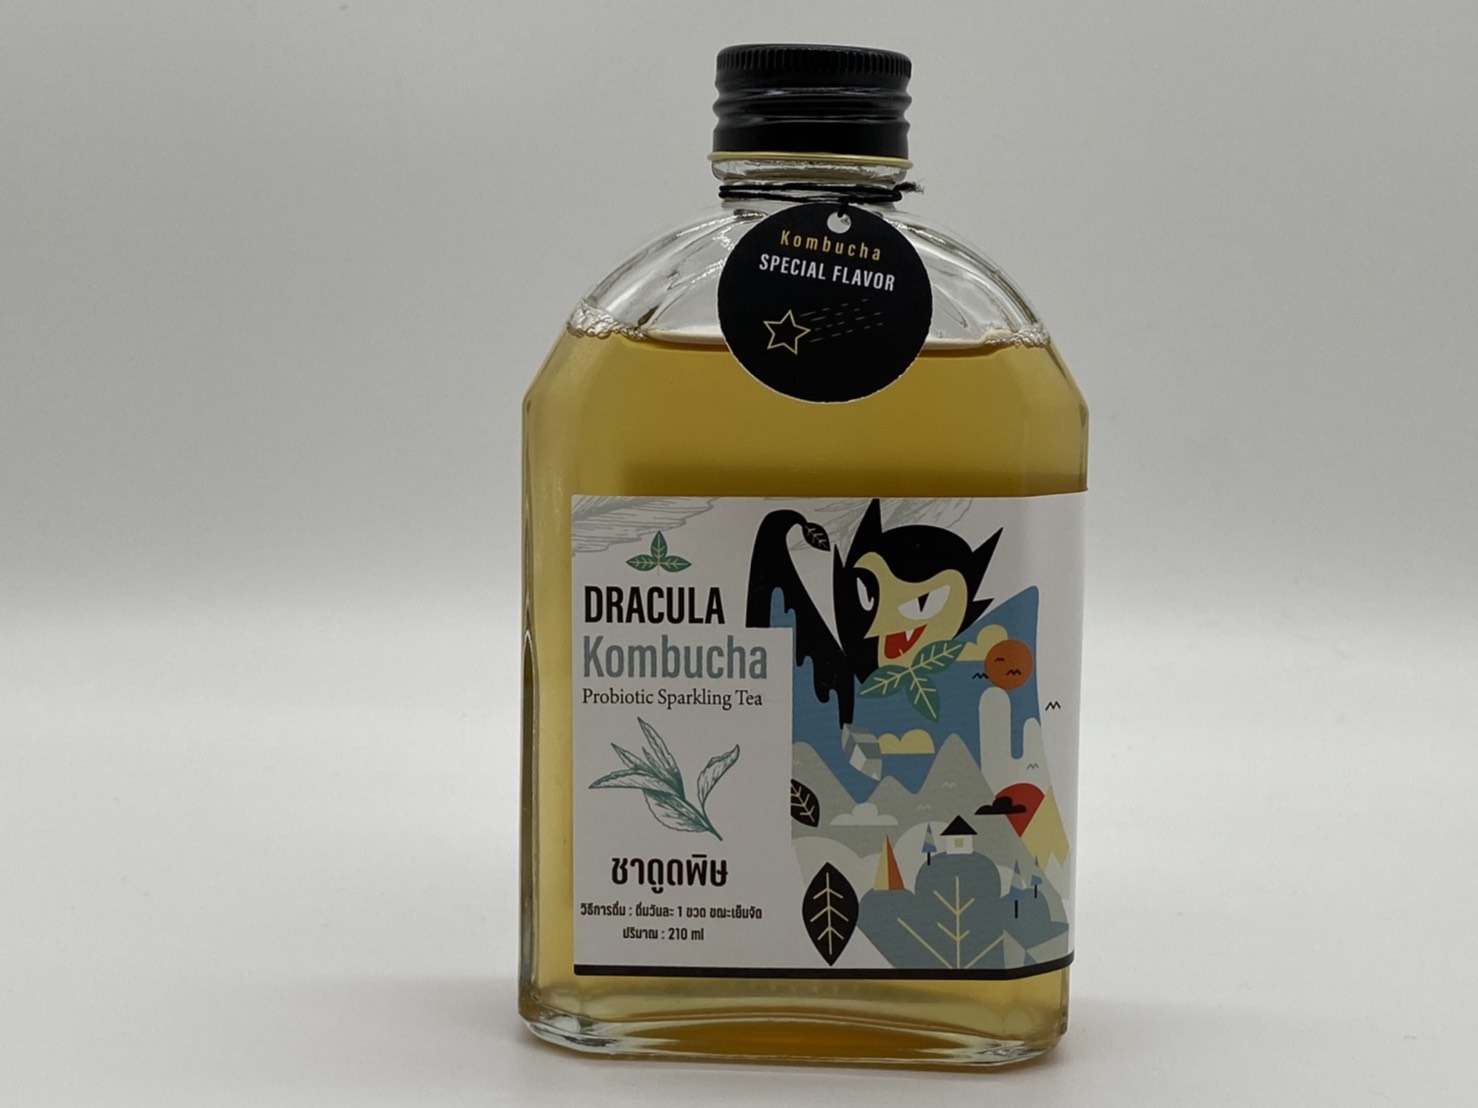 สูตรพิเศษ Dracula ชาดูดพิษ Raw Kombucha organic คอมบูชา คอมบูชะ ชาหมัก ดีท็อกซ์ ท้องผูก มีโพรไบโอติกสูง ชาผู่เอ๋อ สารต้านอนุมูลอิสระ detox probiotic antioxidant ขนาด 210m